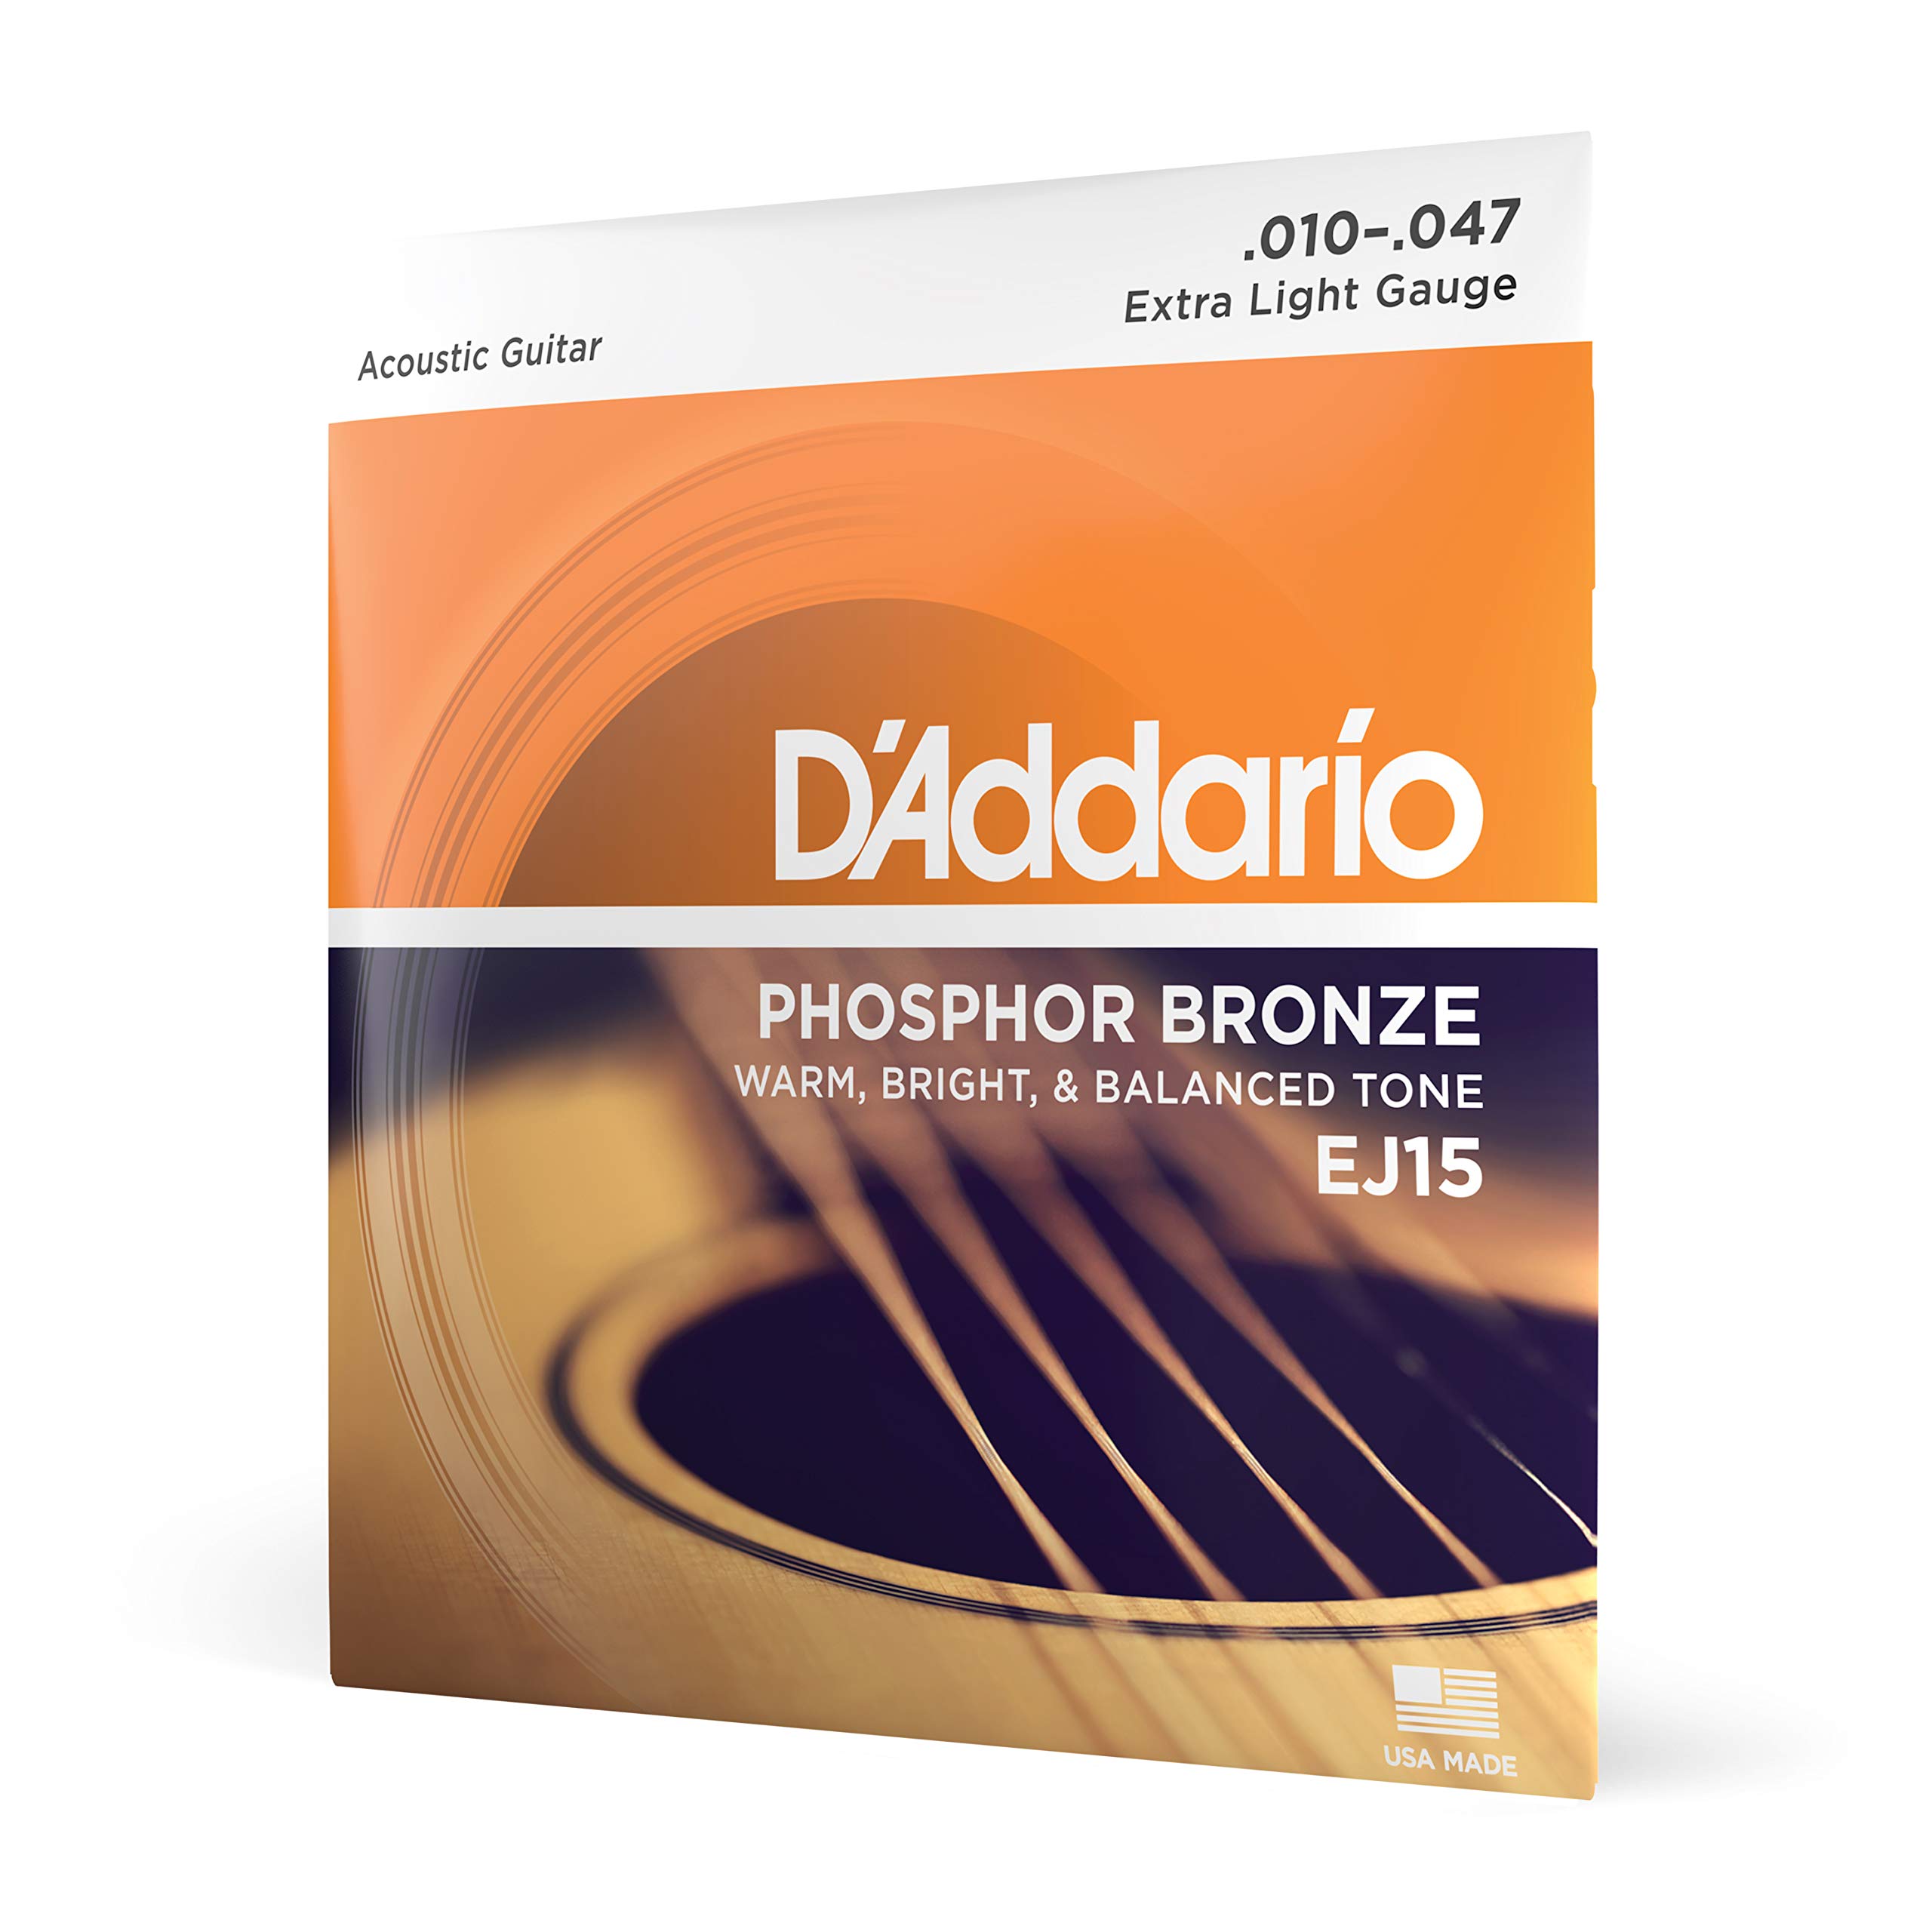 D'Addario Струны для гитары - Струны для акустической гитары из фосфористой бронзы